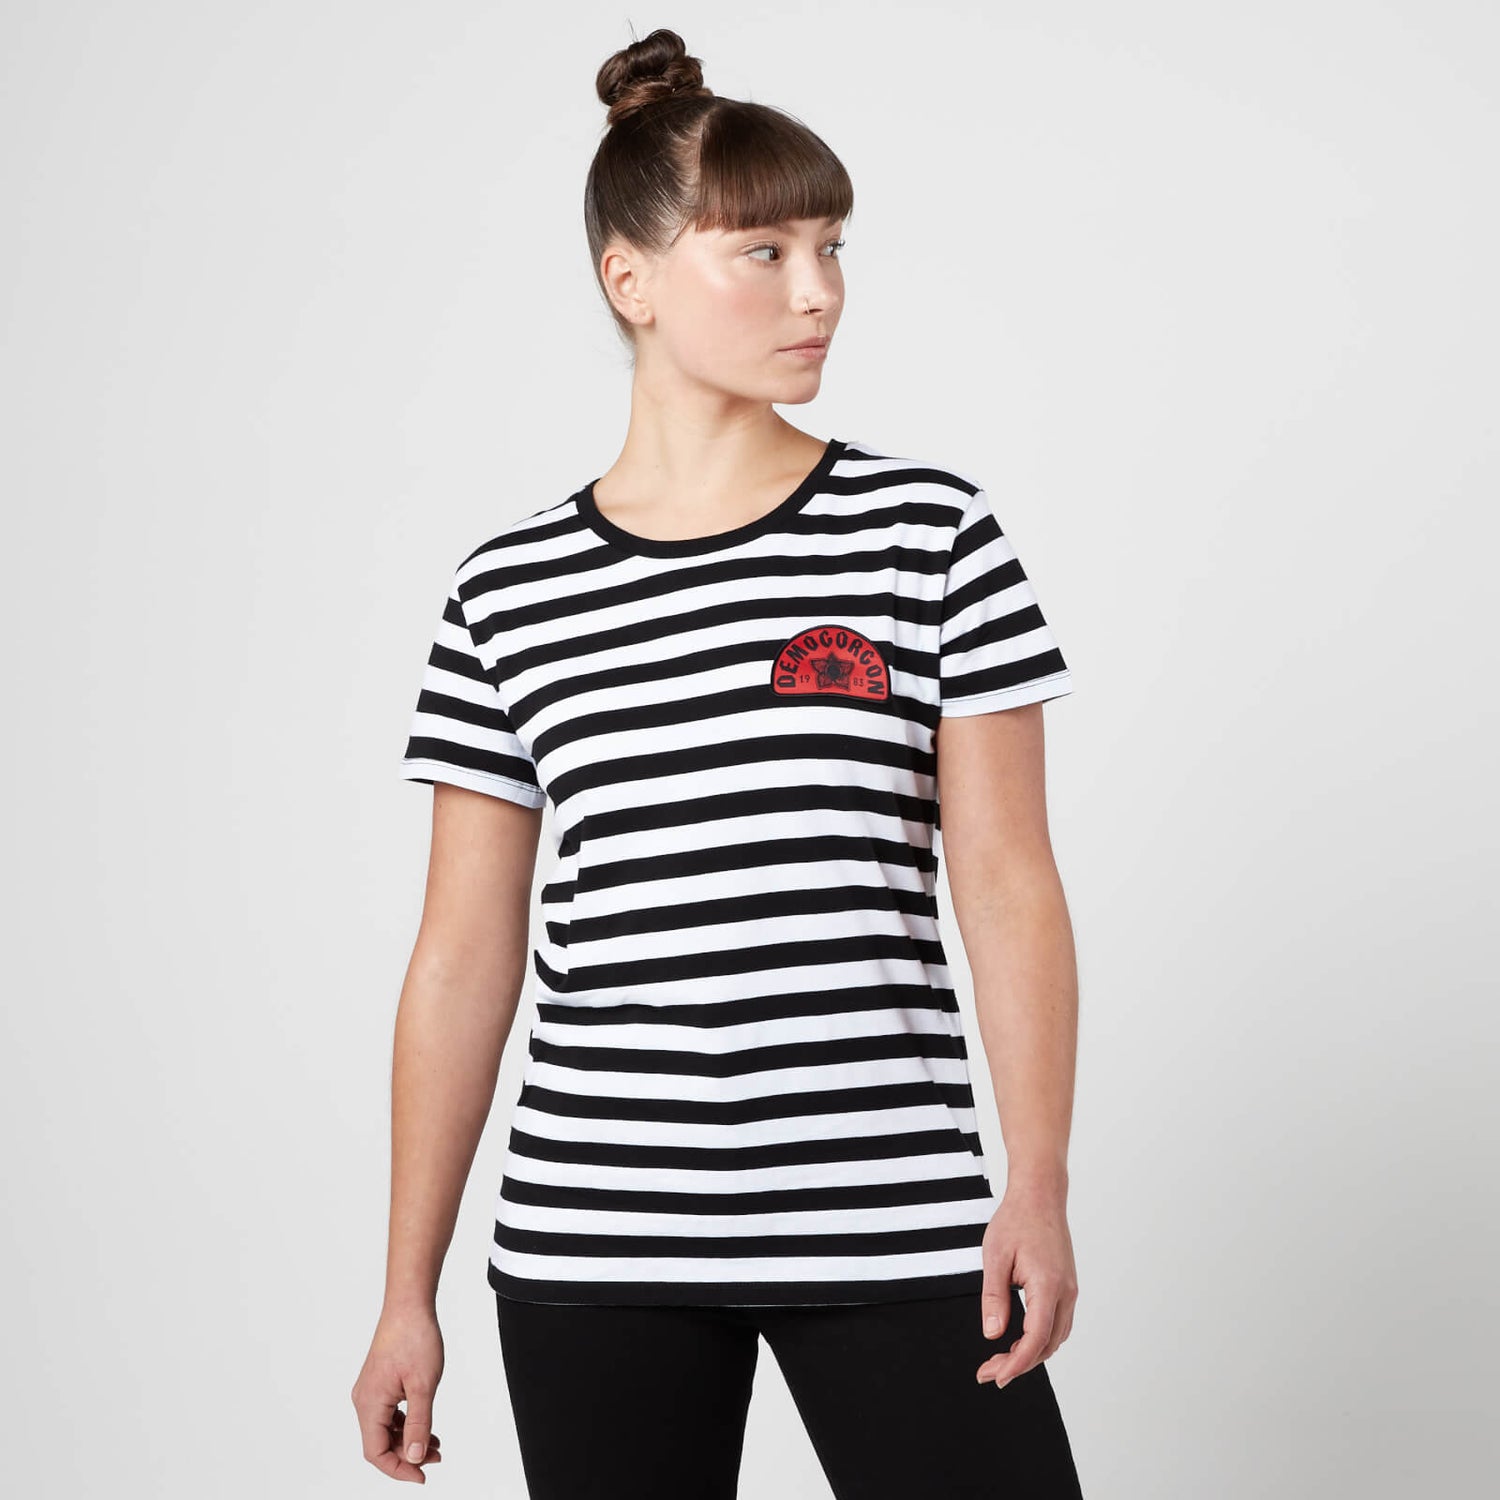 Stranger Things Demogorgon 1983 Women's T-Shirt - Black Striped